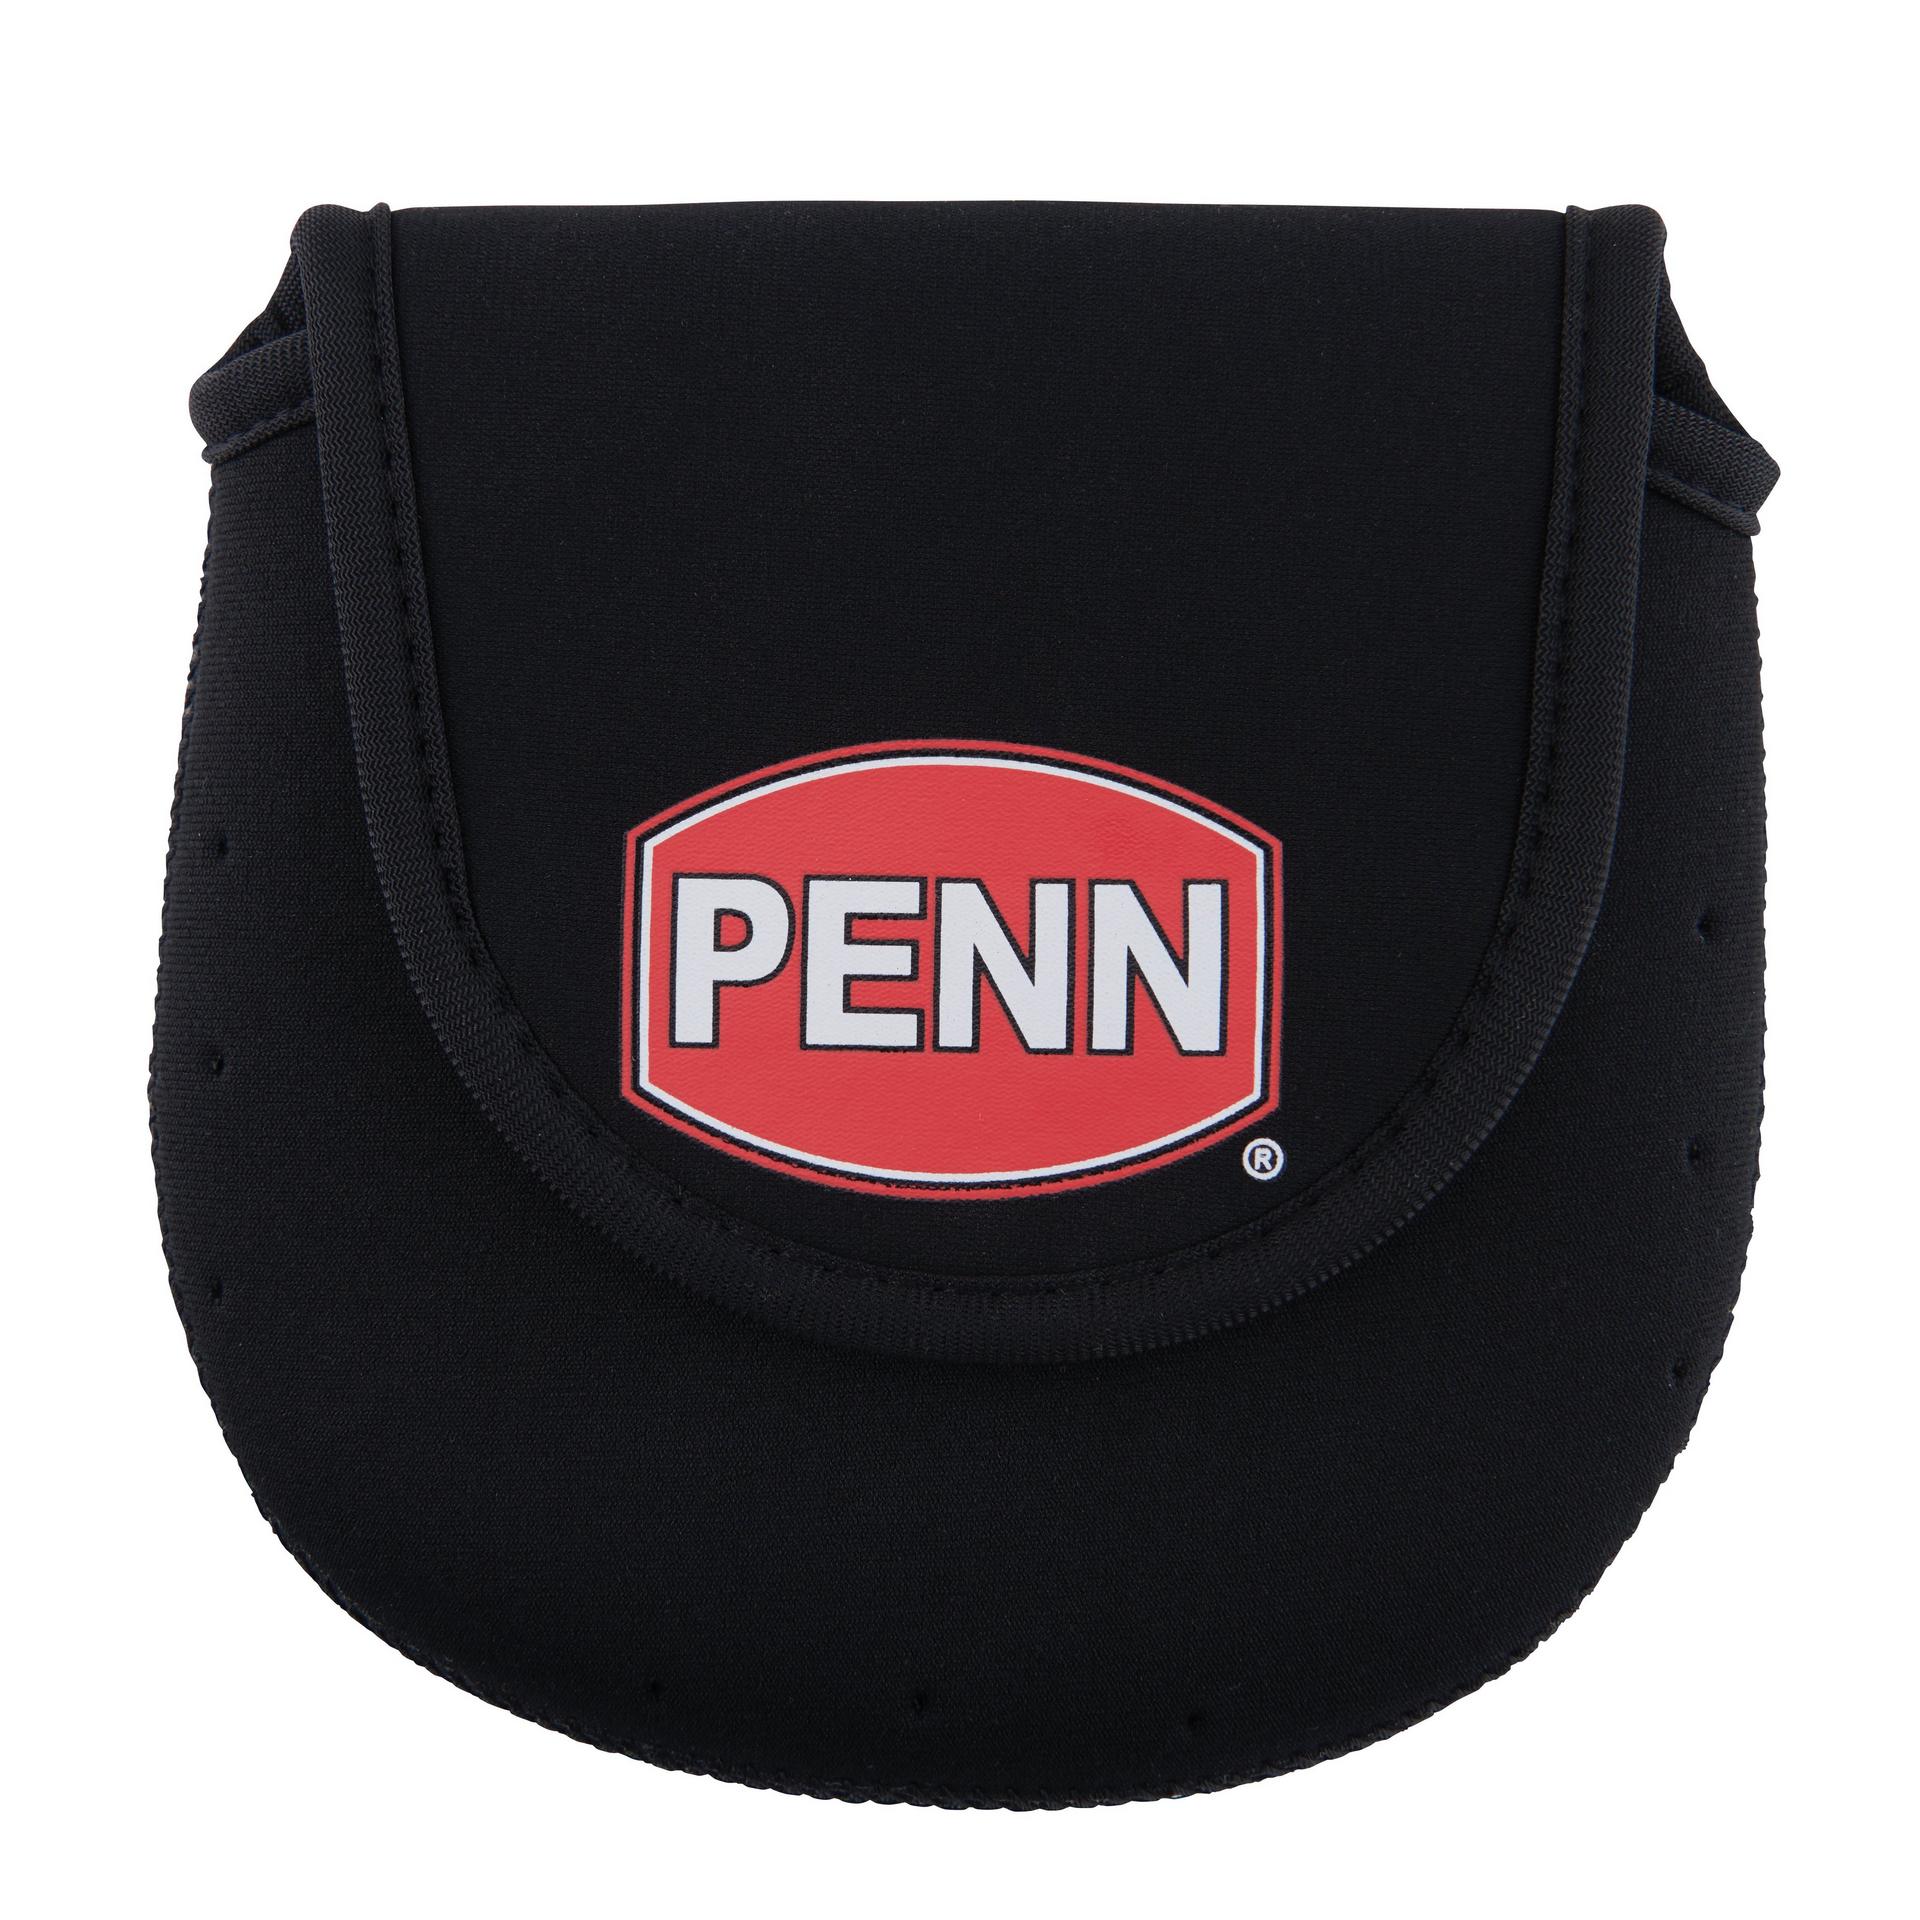 Penn Conventional Neoprene Reel Cover